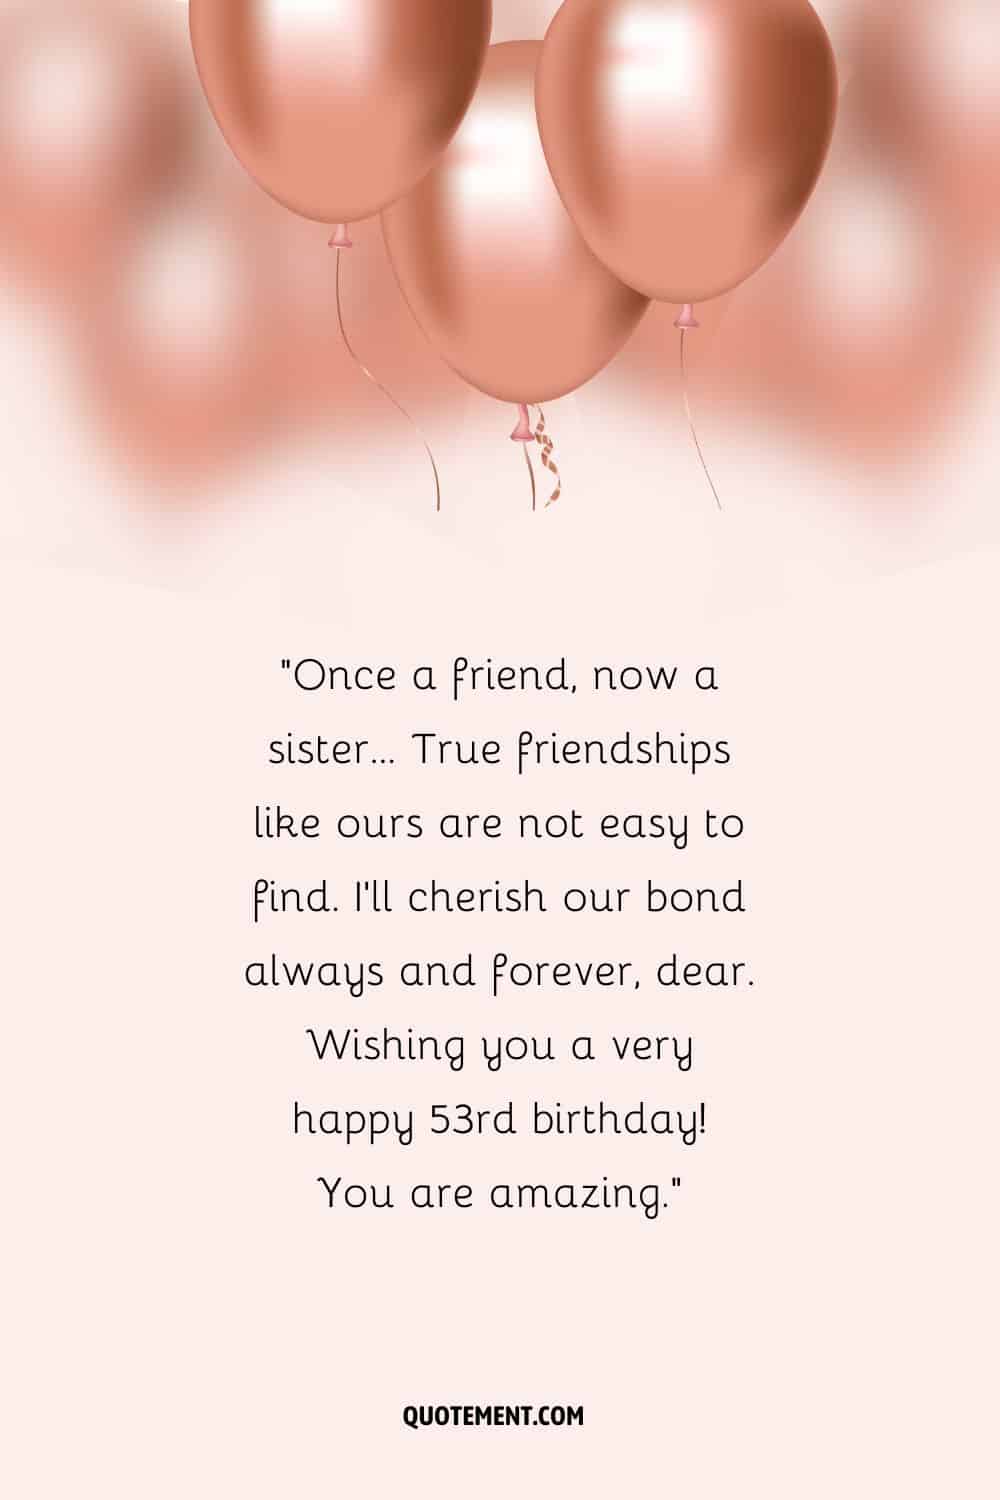 Conmovedor mensaje para el 53 cumpleaños de una amiga y globos de oro rosa